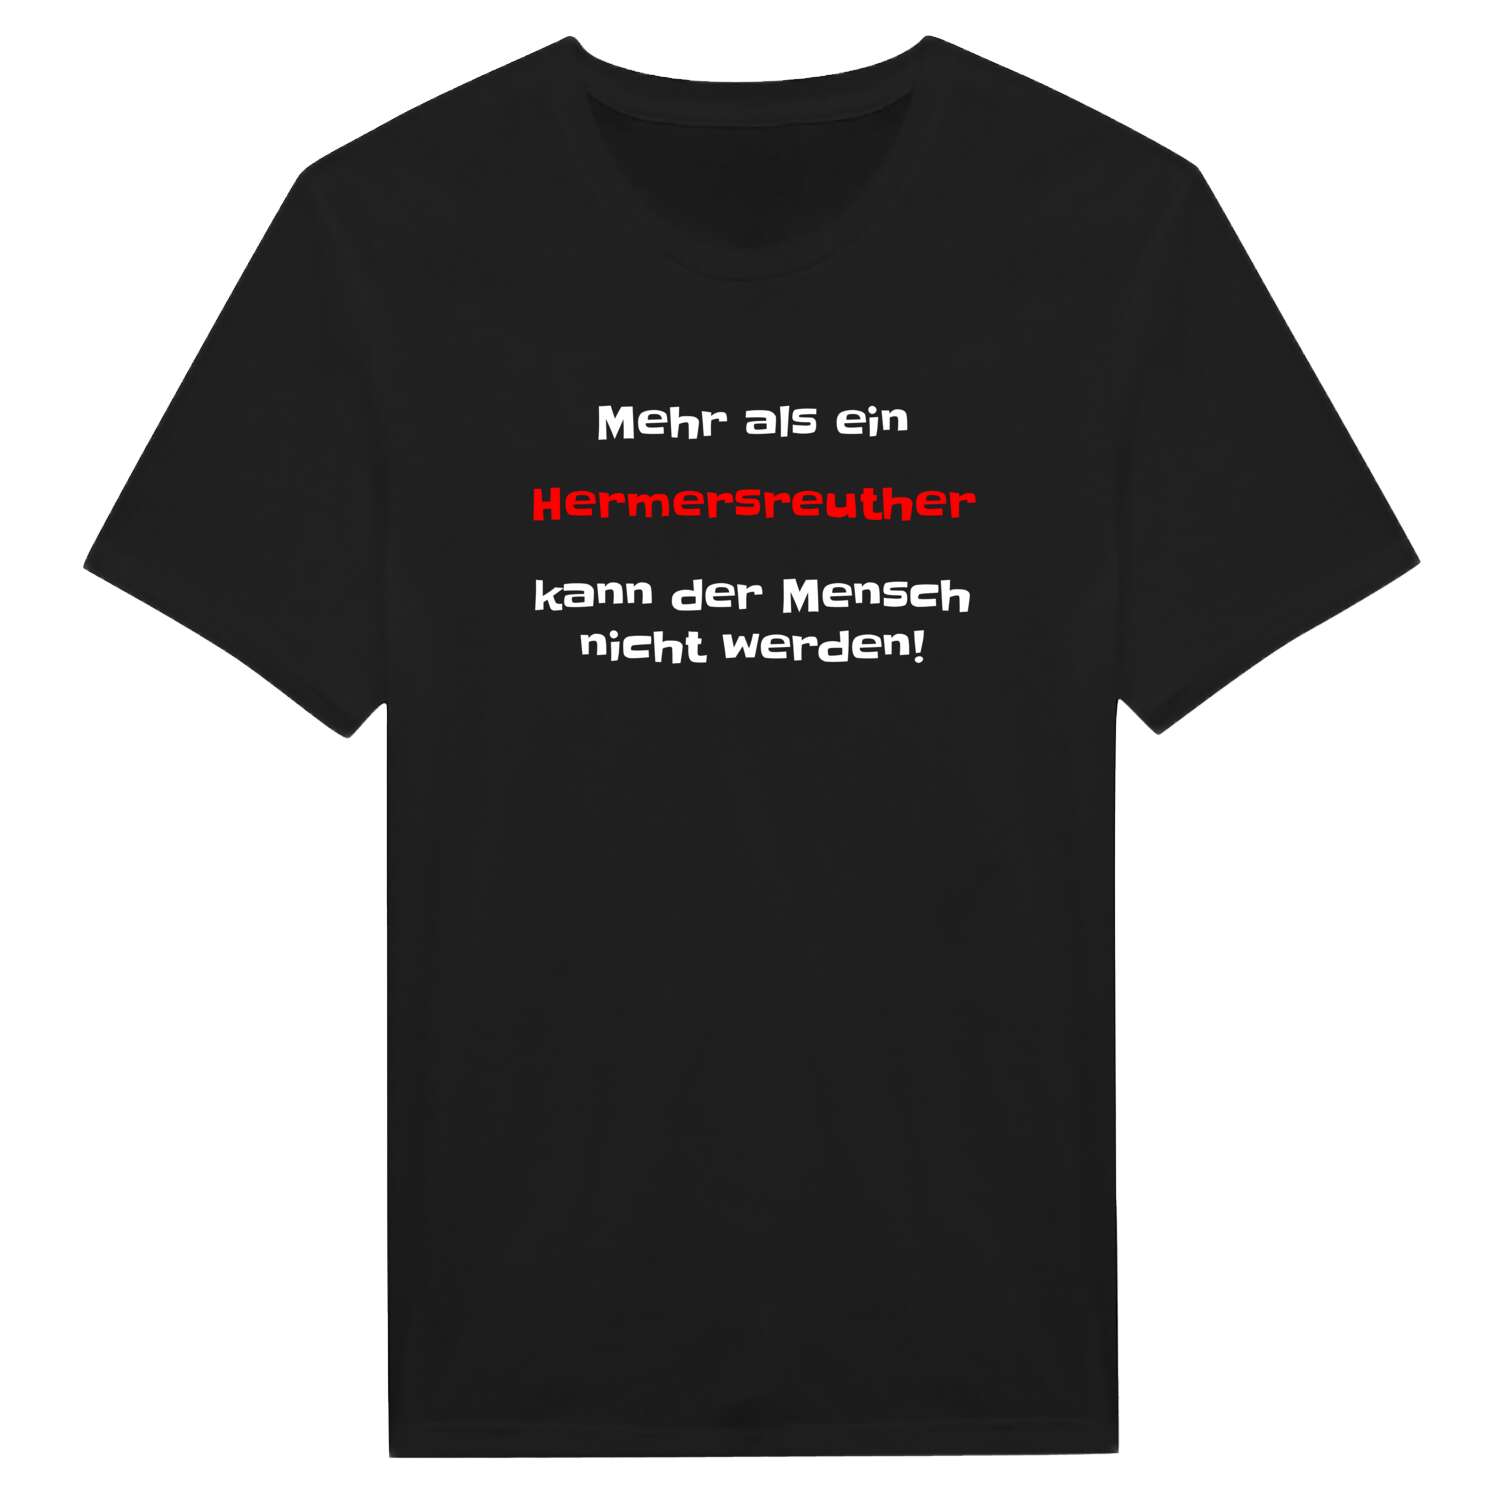 Hermersreuth T-Shirt »Mehr als ein«